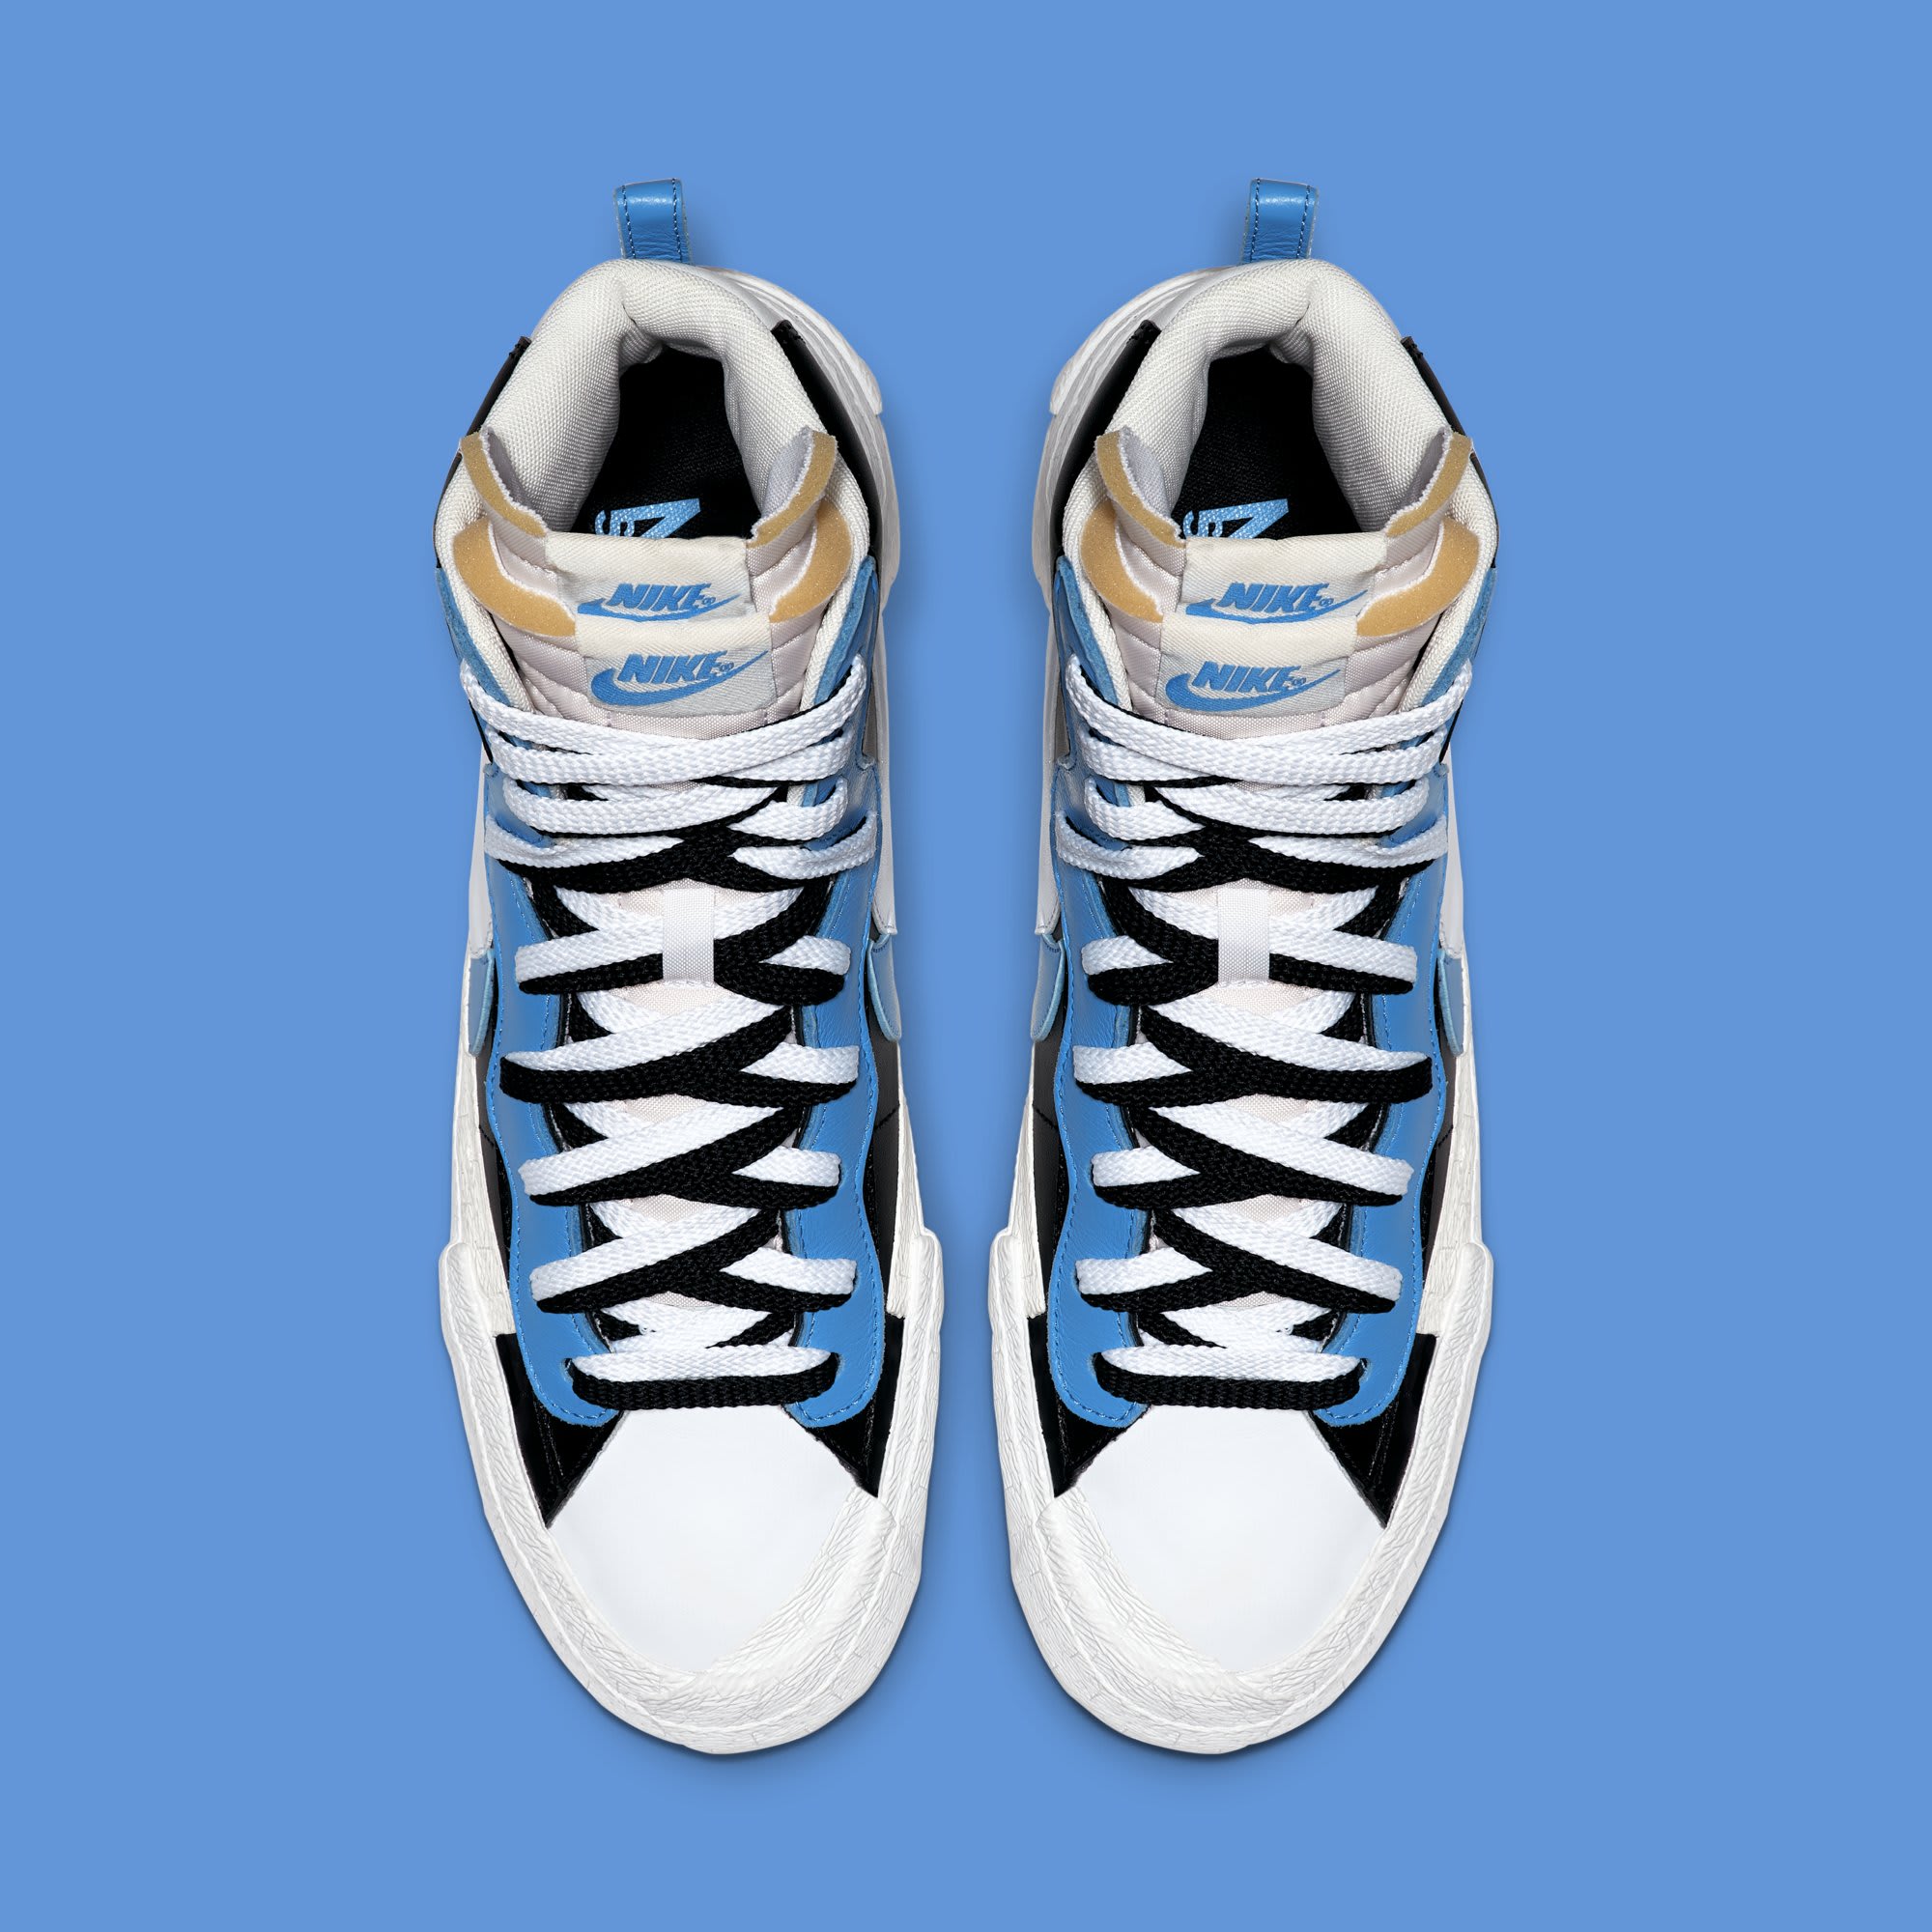 Sacai x Nike Blazer High &#x27;Black/White/University Blue/Sail&#x27; BV0072-001 (Top)